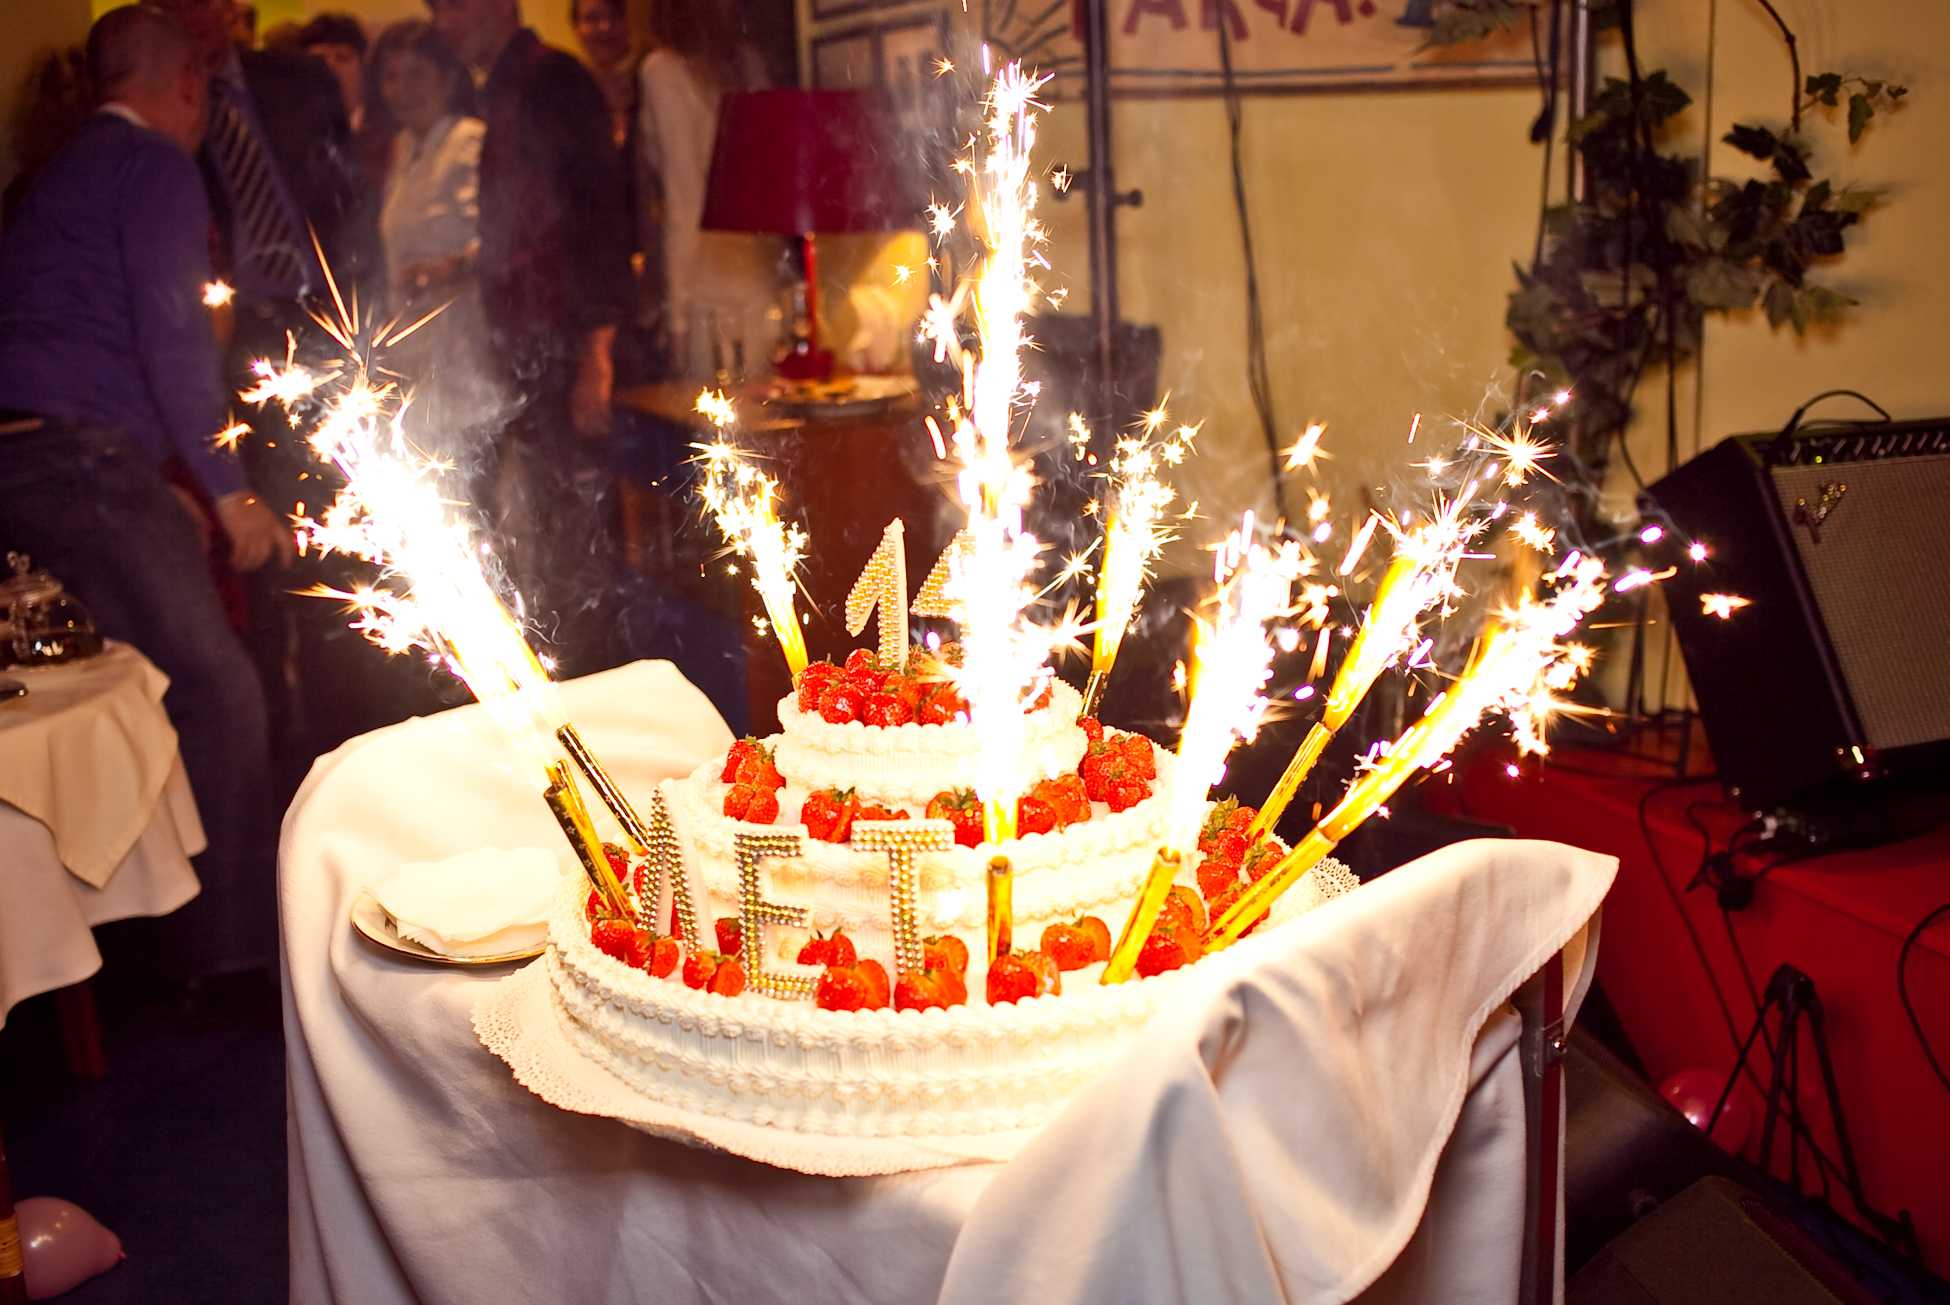 Праздники юбилеи дни рождения. Праздничный торт. Праздничный стол с тортом. Свечи для торта. День рождения в ресторане.